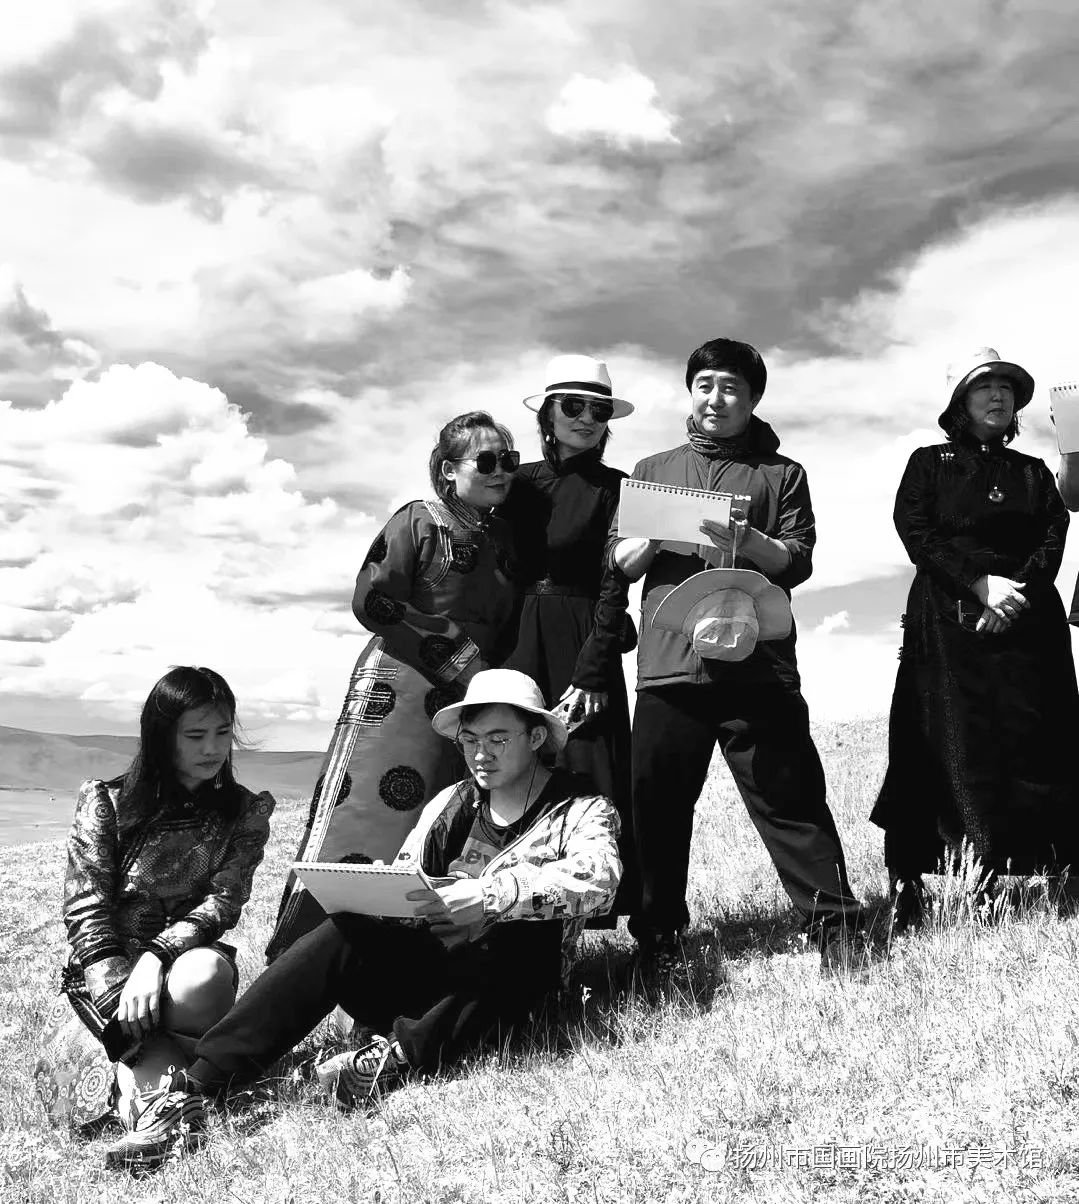 “云端——安玉民中国画作品展”在扬州大学美术馆开幕，展现至纯至美的蒙古草原